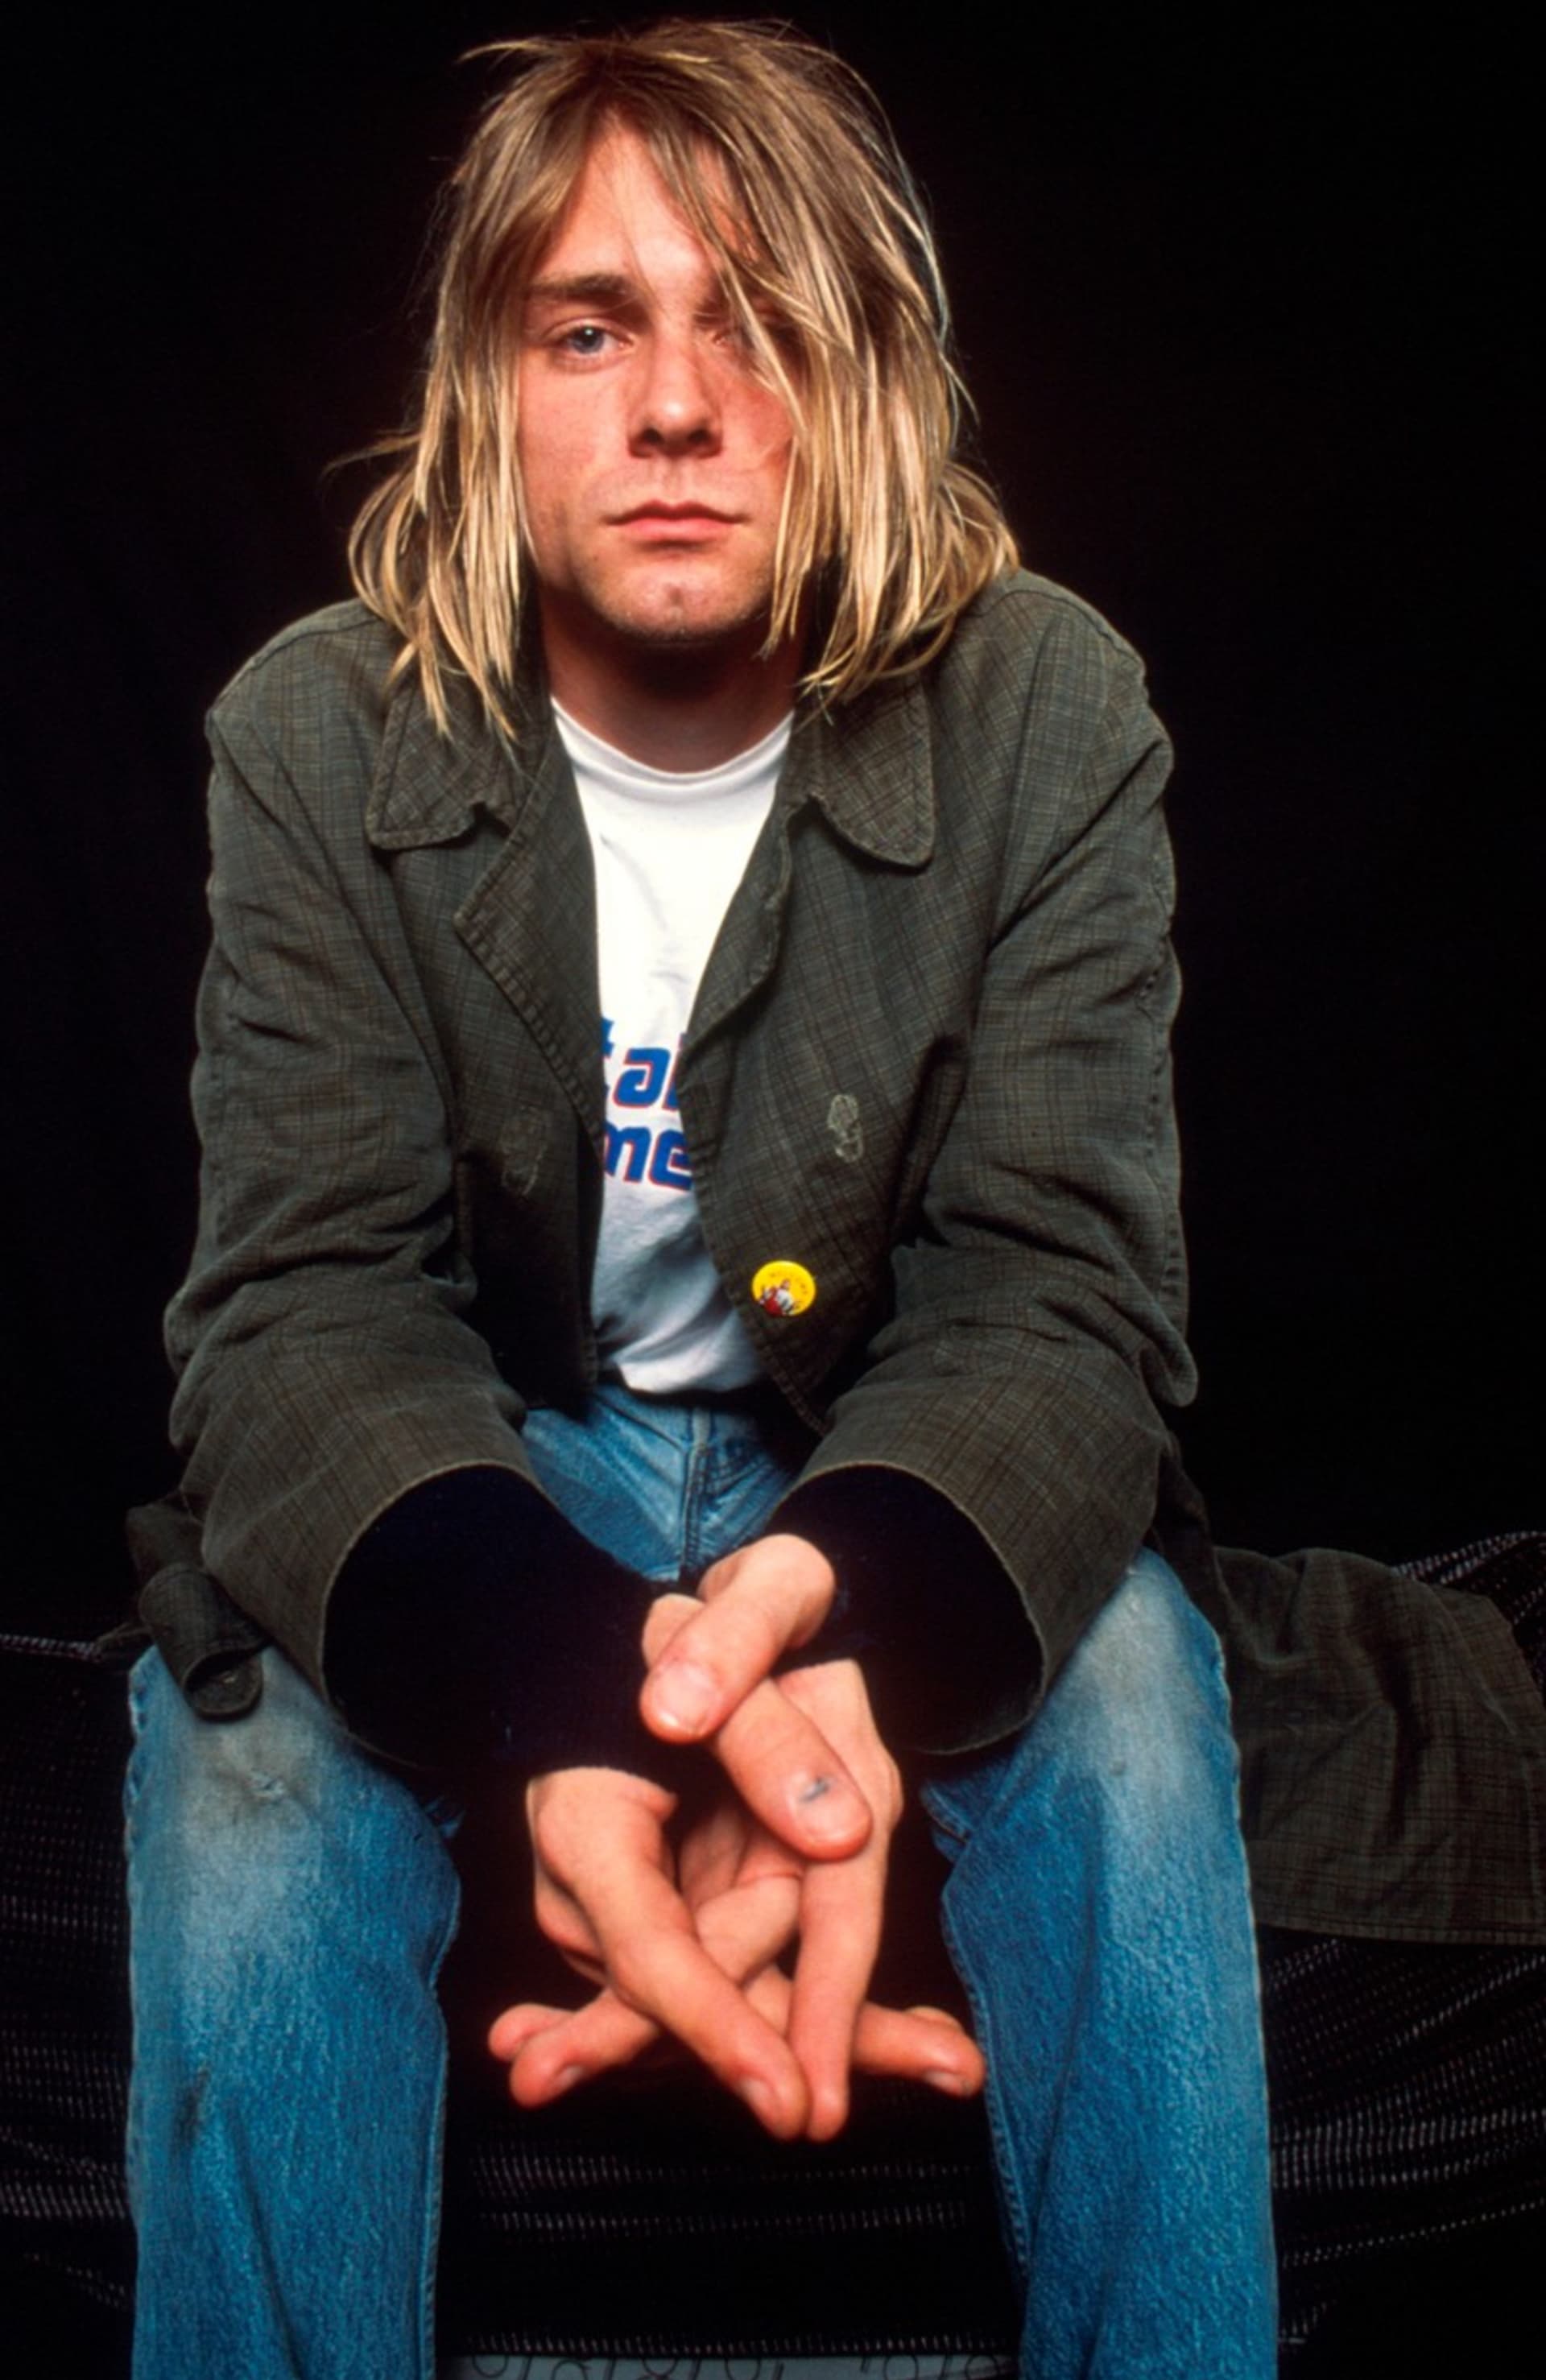 Spencer Elden neuspěl se žalobou proti skupině Nirvana.